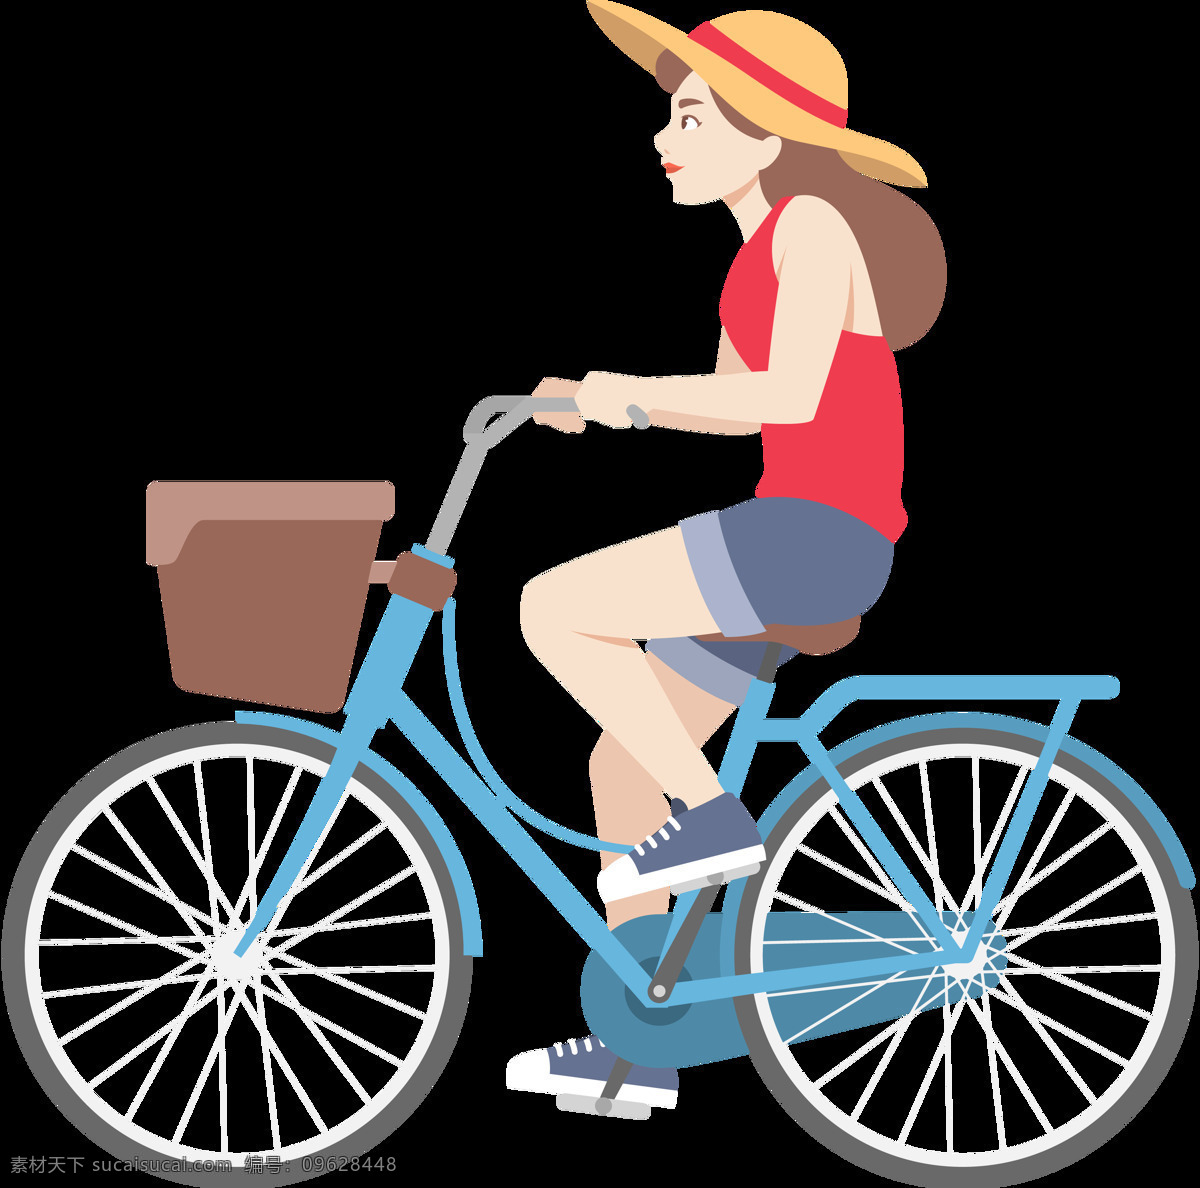 女孩 骑 自行车 插画 免 抠 透明 图 层 共享单车 女式单车 男式单车 电动车 绿色低碳 绿色环保 环保电动车 健身单车 摩拜 ofo单车 小蓝单车 双人单车 多人单车